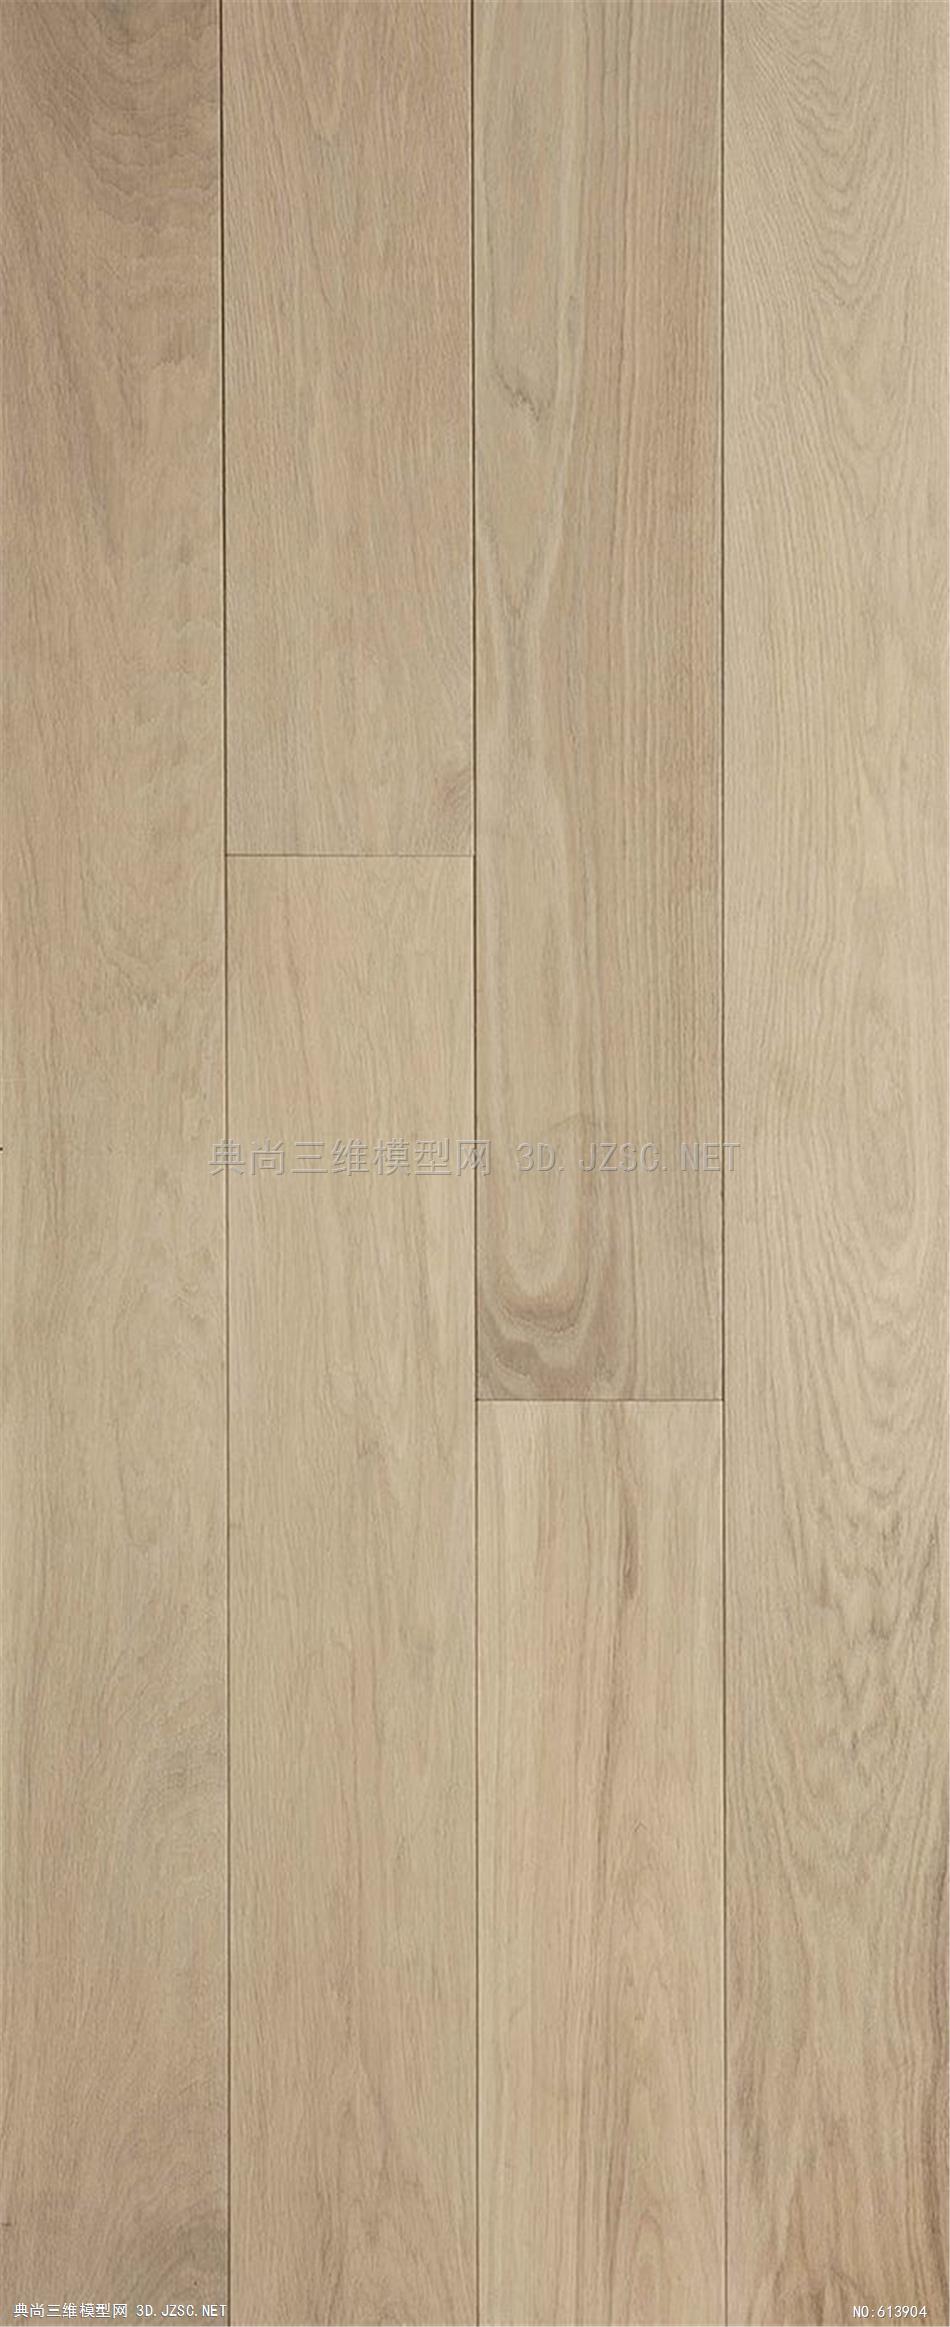 木饰面 木纹 木材  高清材质贴图 (183)